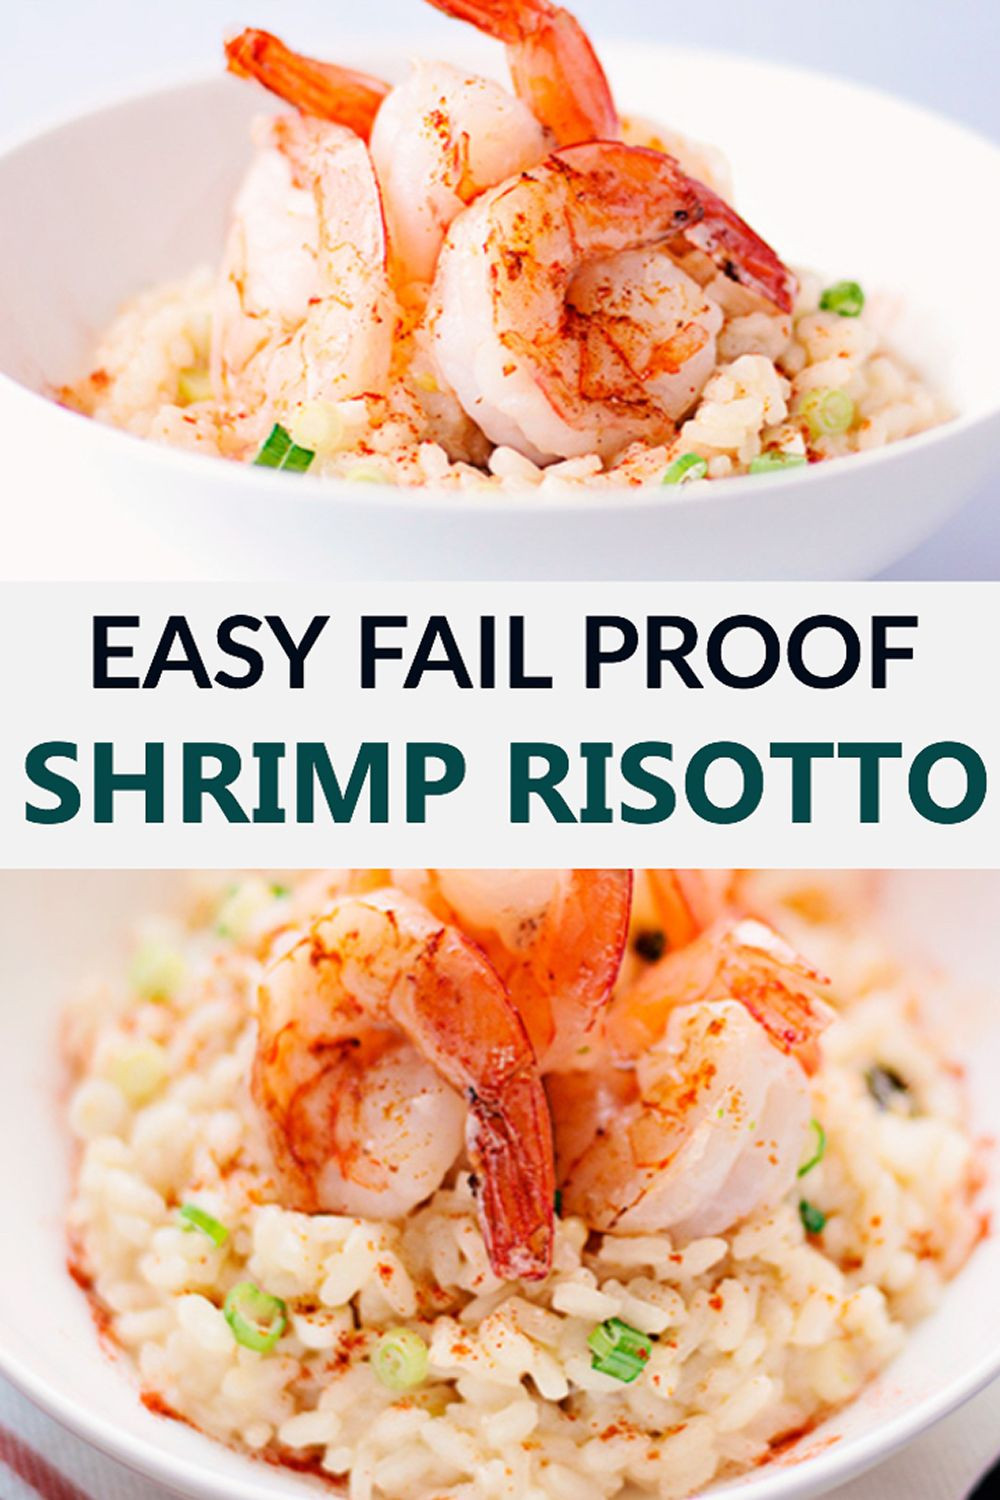 Seafood Risotto Recipes
 Creamy Garlic Prawn Risotto Shrimp Recipe